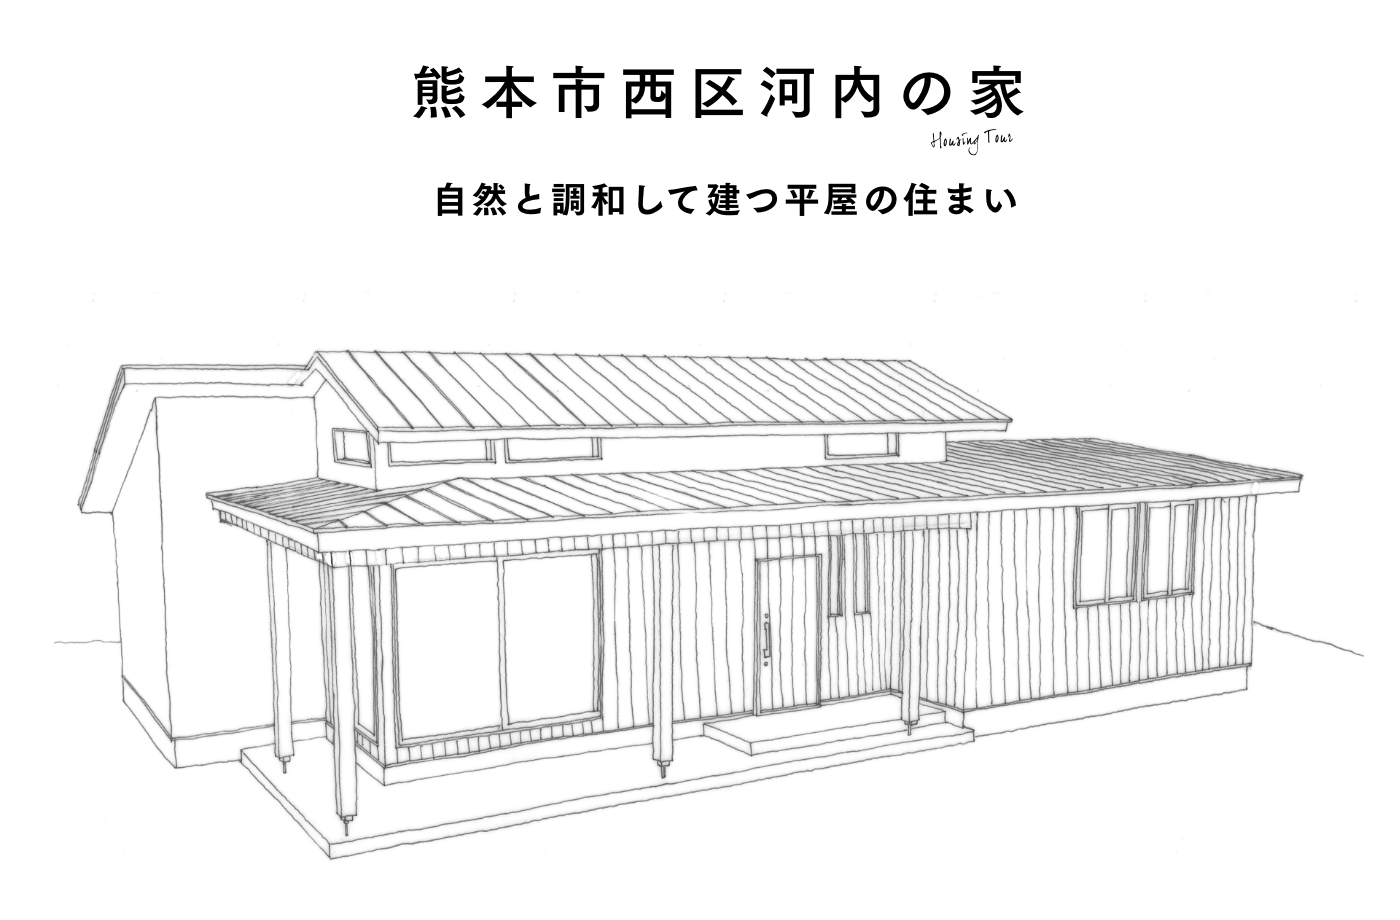 熊本市西区河内の家 自然と調和して建つ平屋の住まい 構造見学会開催